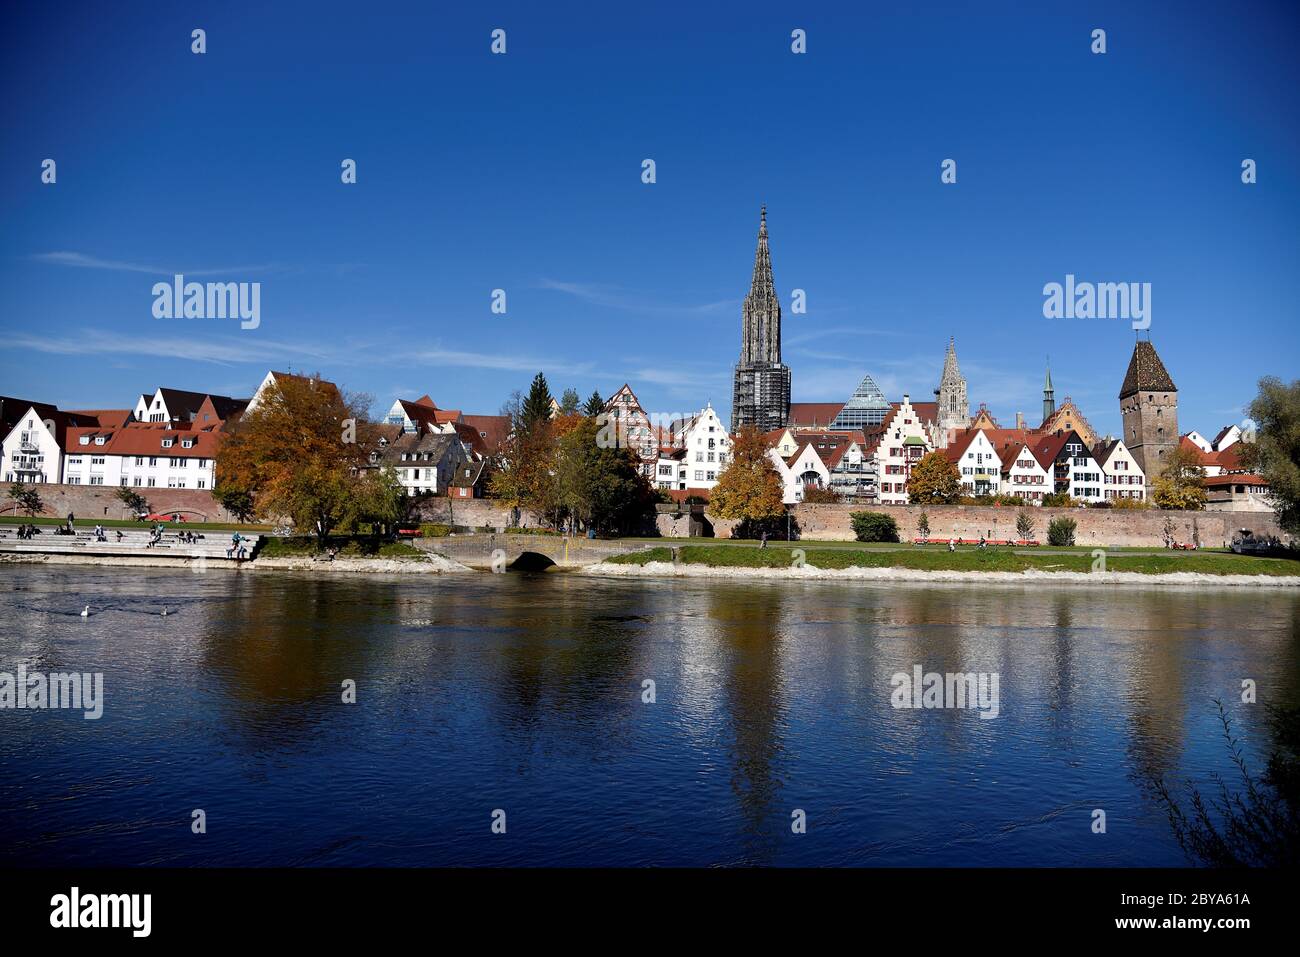 Paesaggio urbano di Ulm sul Danubio con la cattedrale, le mura cittadine e la torre Metzger in un giorno d'autunno soleggiato, l'Alb Svevo, Germania, Europa Foto Stock